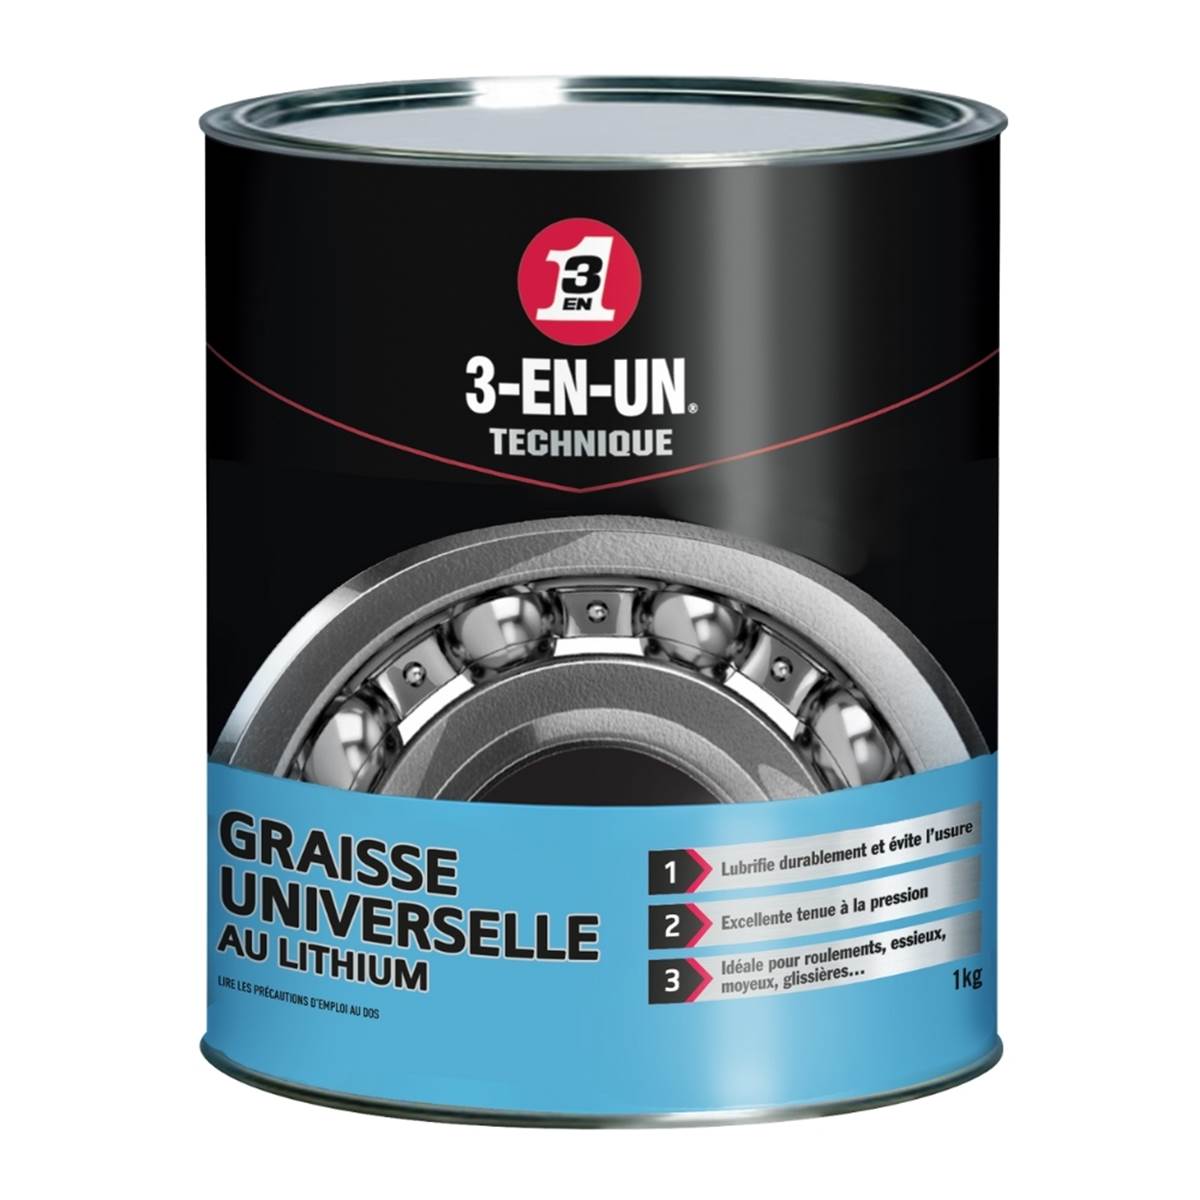 Graisse Universelle au Lithium 3-EN-UN TECHNIQUE pot 1 kg